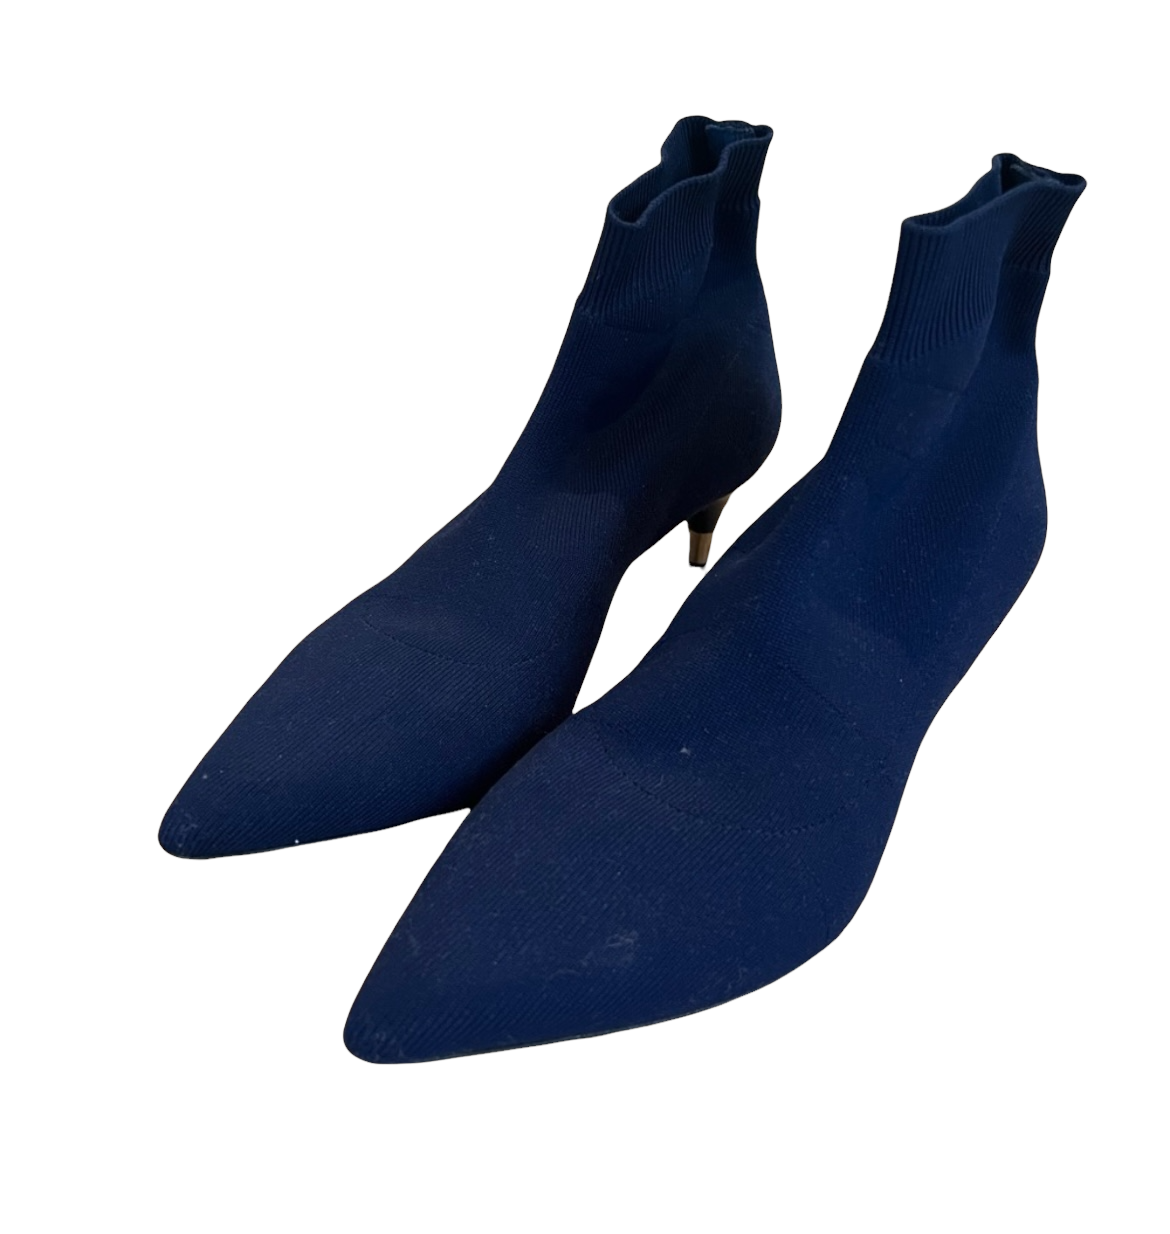 Socks Knit Blue Boots - 7.5